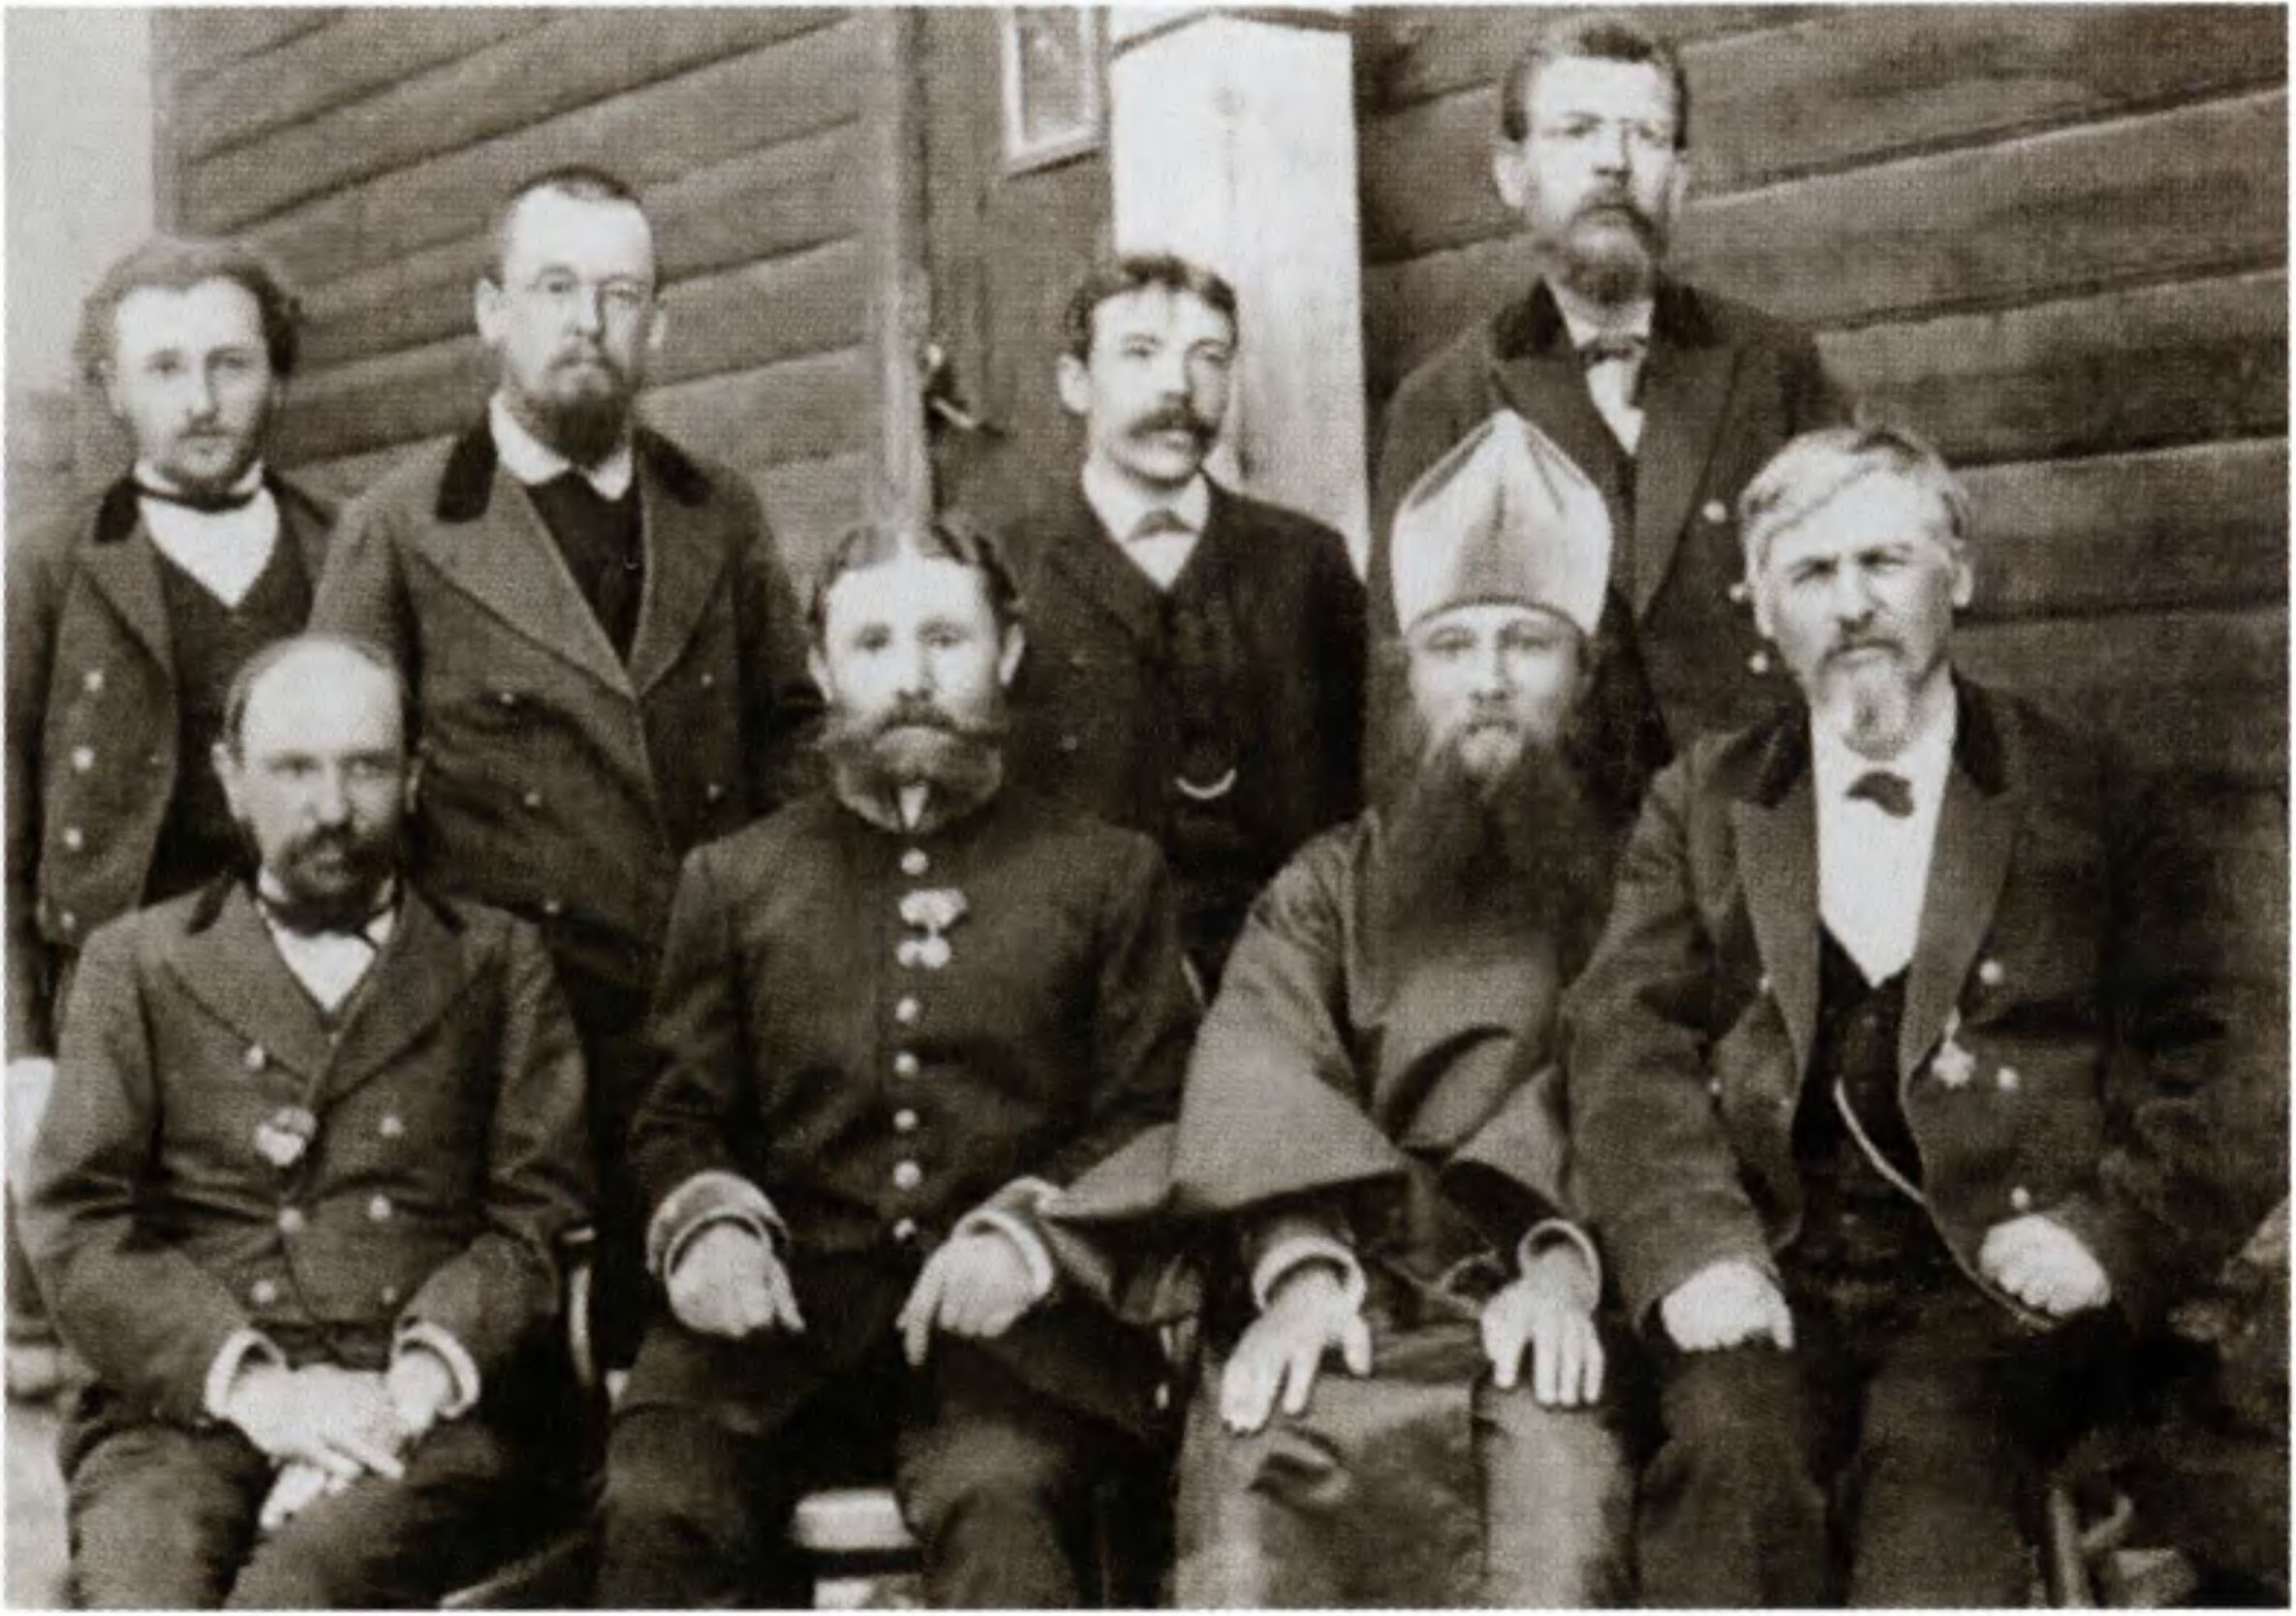 Циолковский (во втором ряду второй слева) в группе учителей Калужского уездного училища. Фото из собрания ГМИК 1895 г